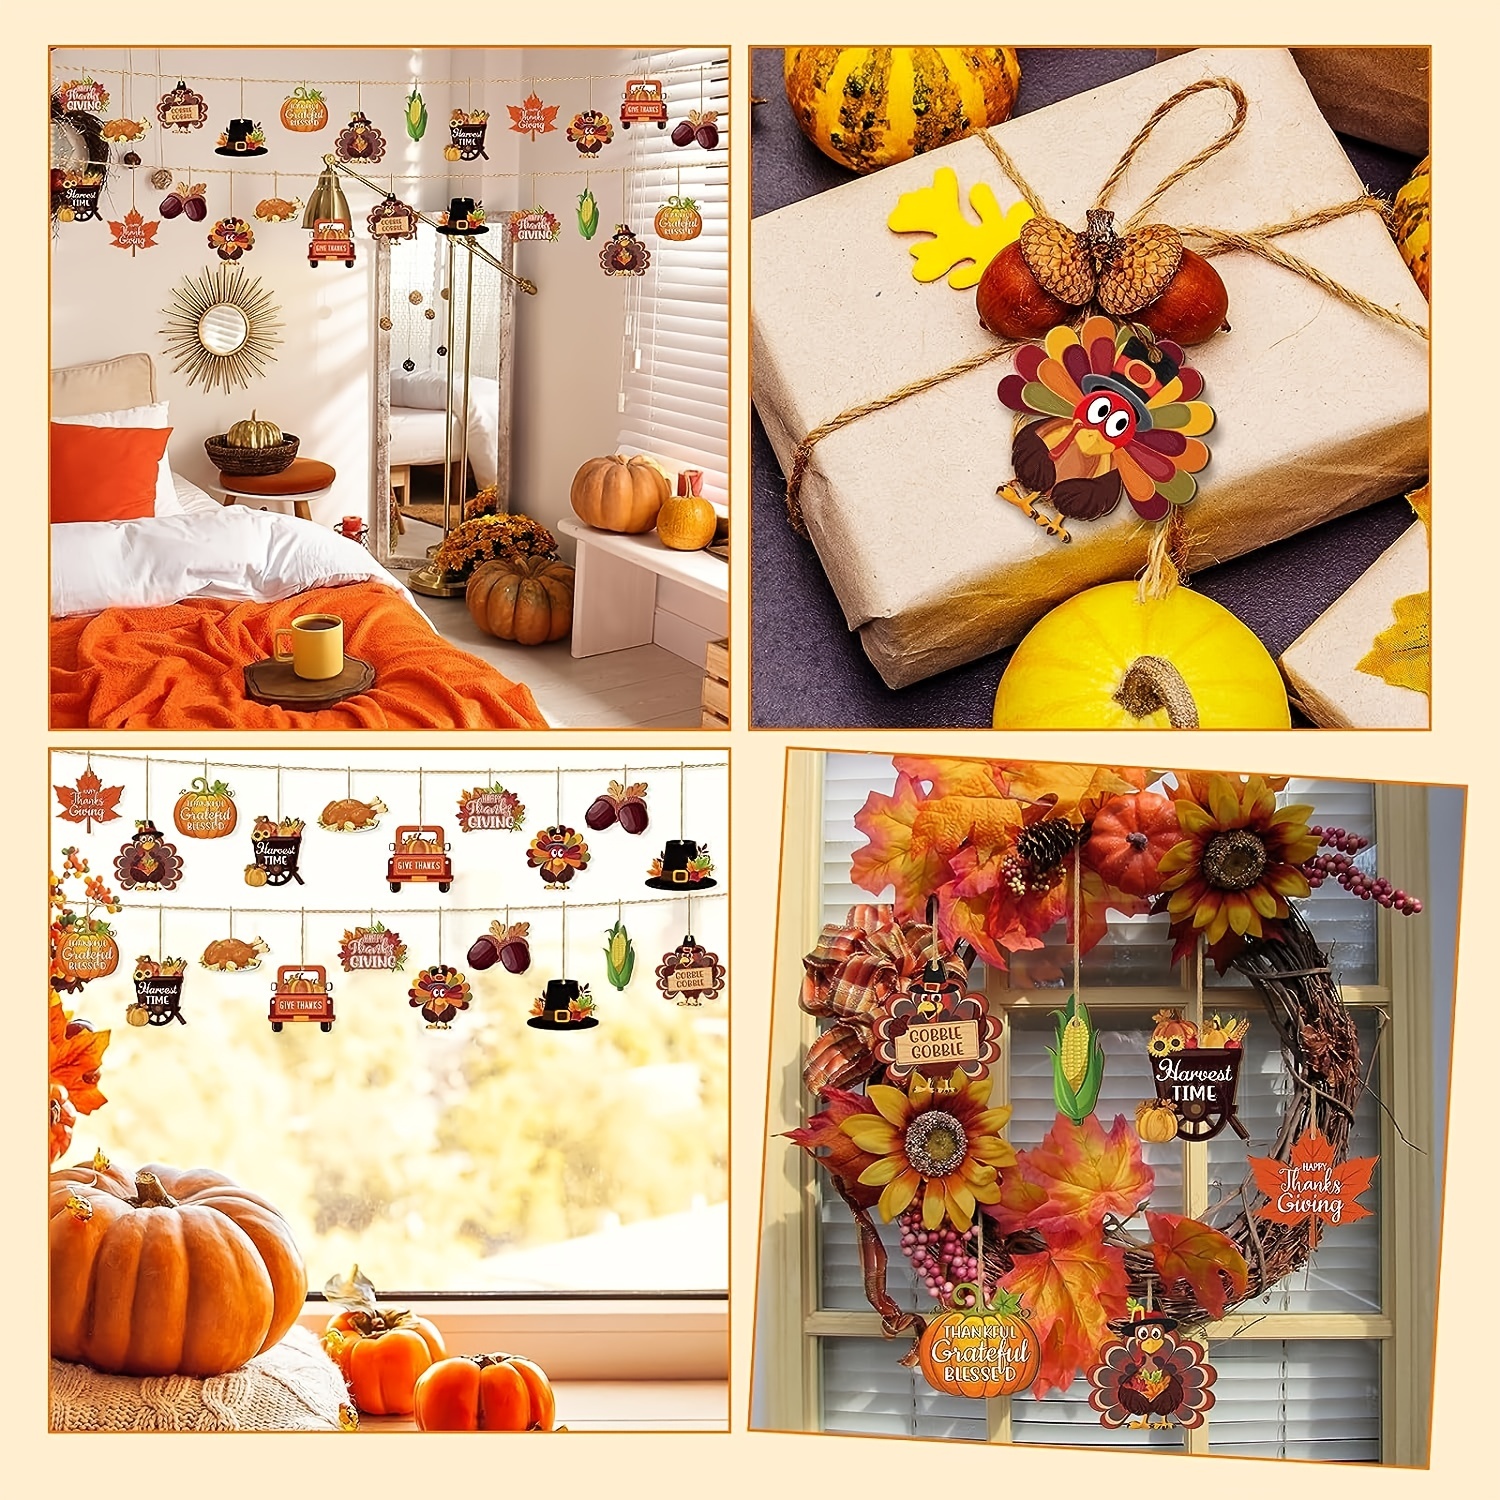  Geetery 24 piezas de decoraciones de otoño de Acción de Gracias  para el hogar, incluyen calabazas falsas, cajas de madera para centros de  mesa, hojas de arce artificiales, girasoles falsos, piñas